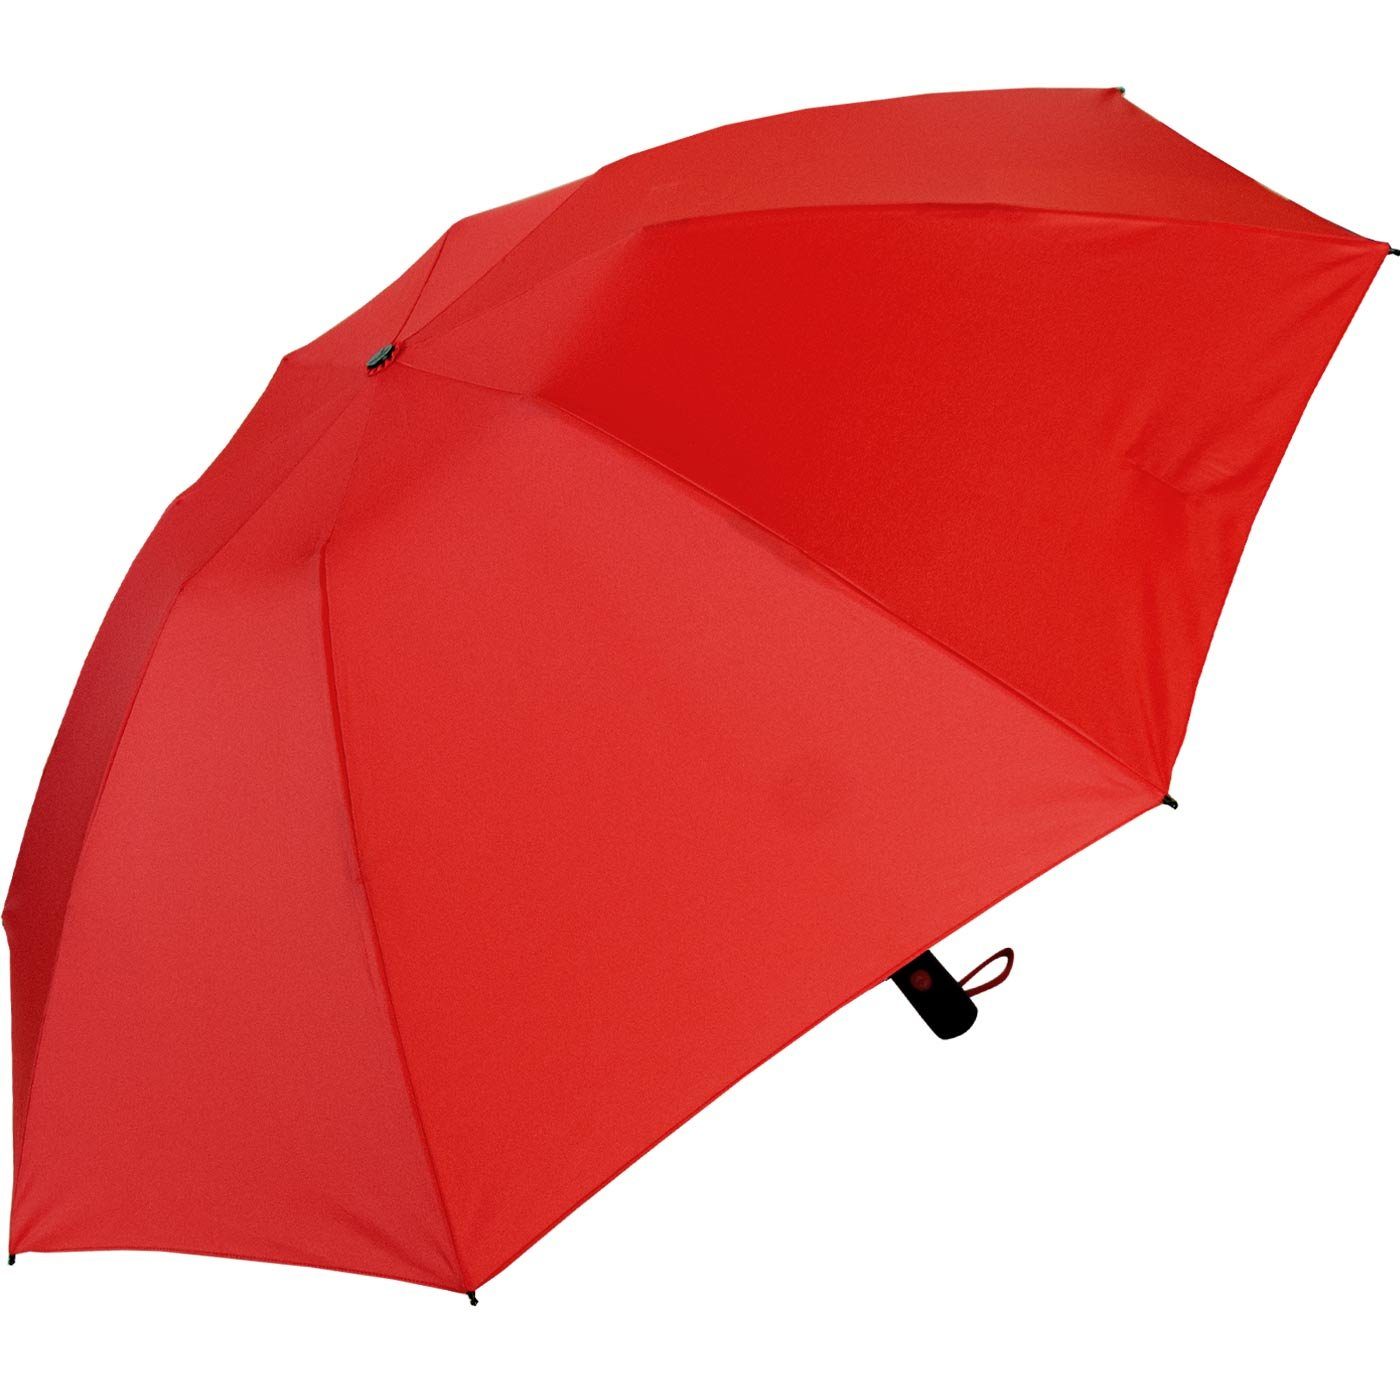 Taschenregenschirm öffnender umgekehrt Reverse Speichen Fiberglas-Automatiksch, stabilen rot bunten iX-brella mit